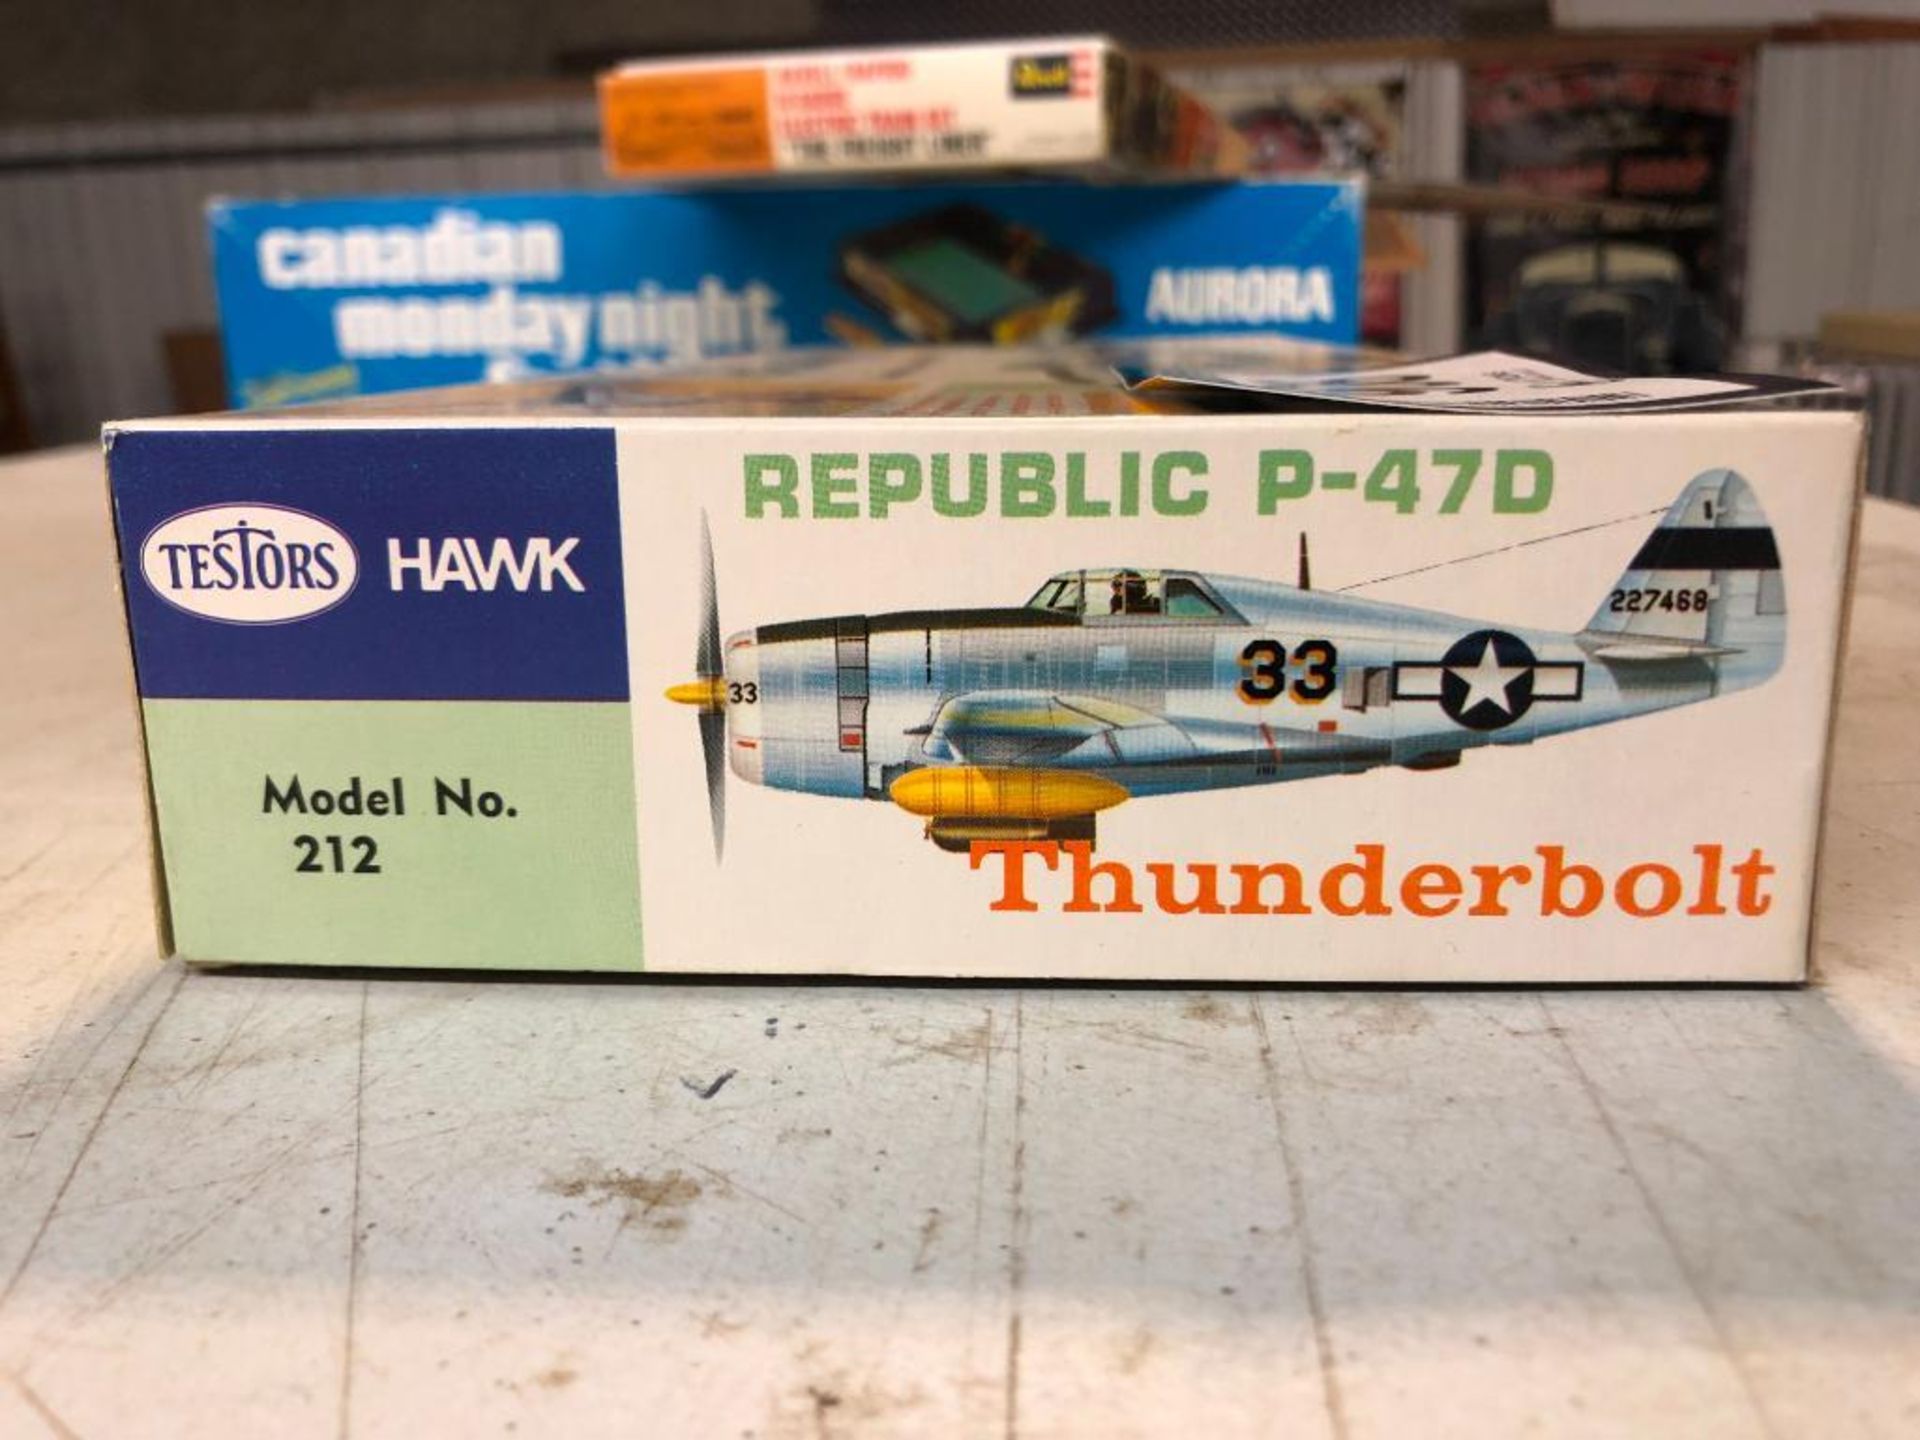 Testors Hawk Republic P-47D Thunderbolt *Box & Parts Only* - Image 3 of 3